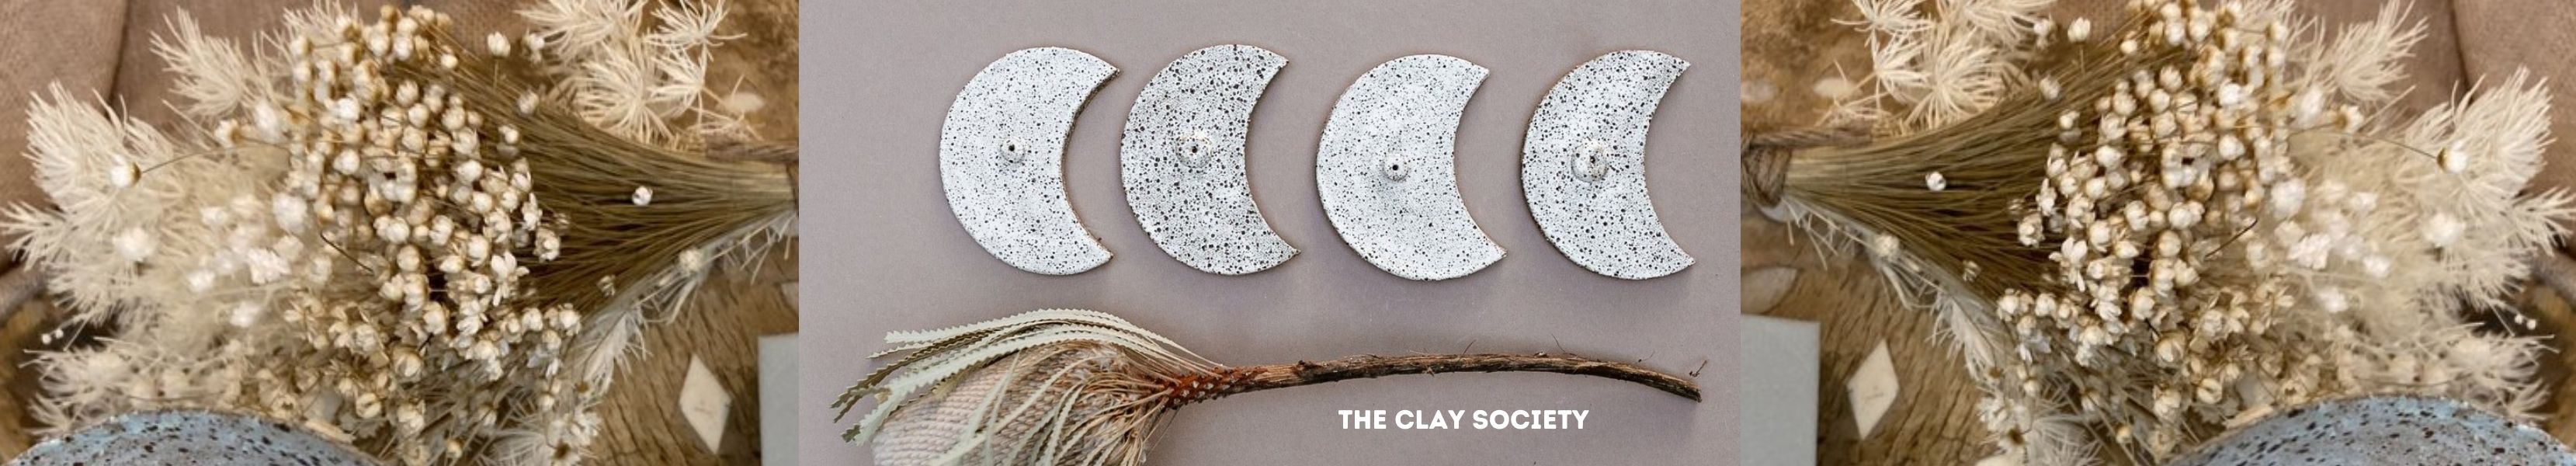 The Clay Society